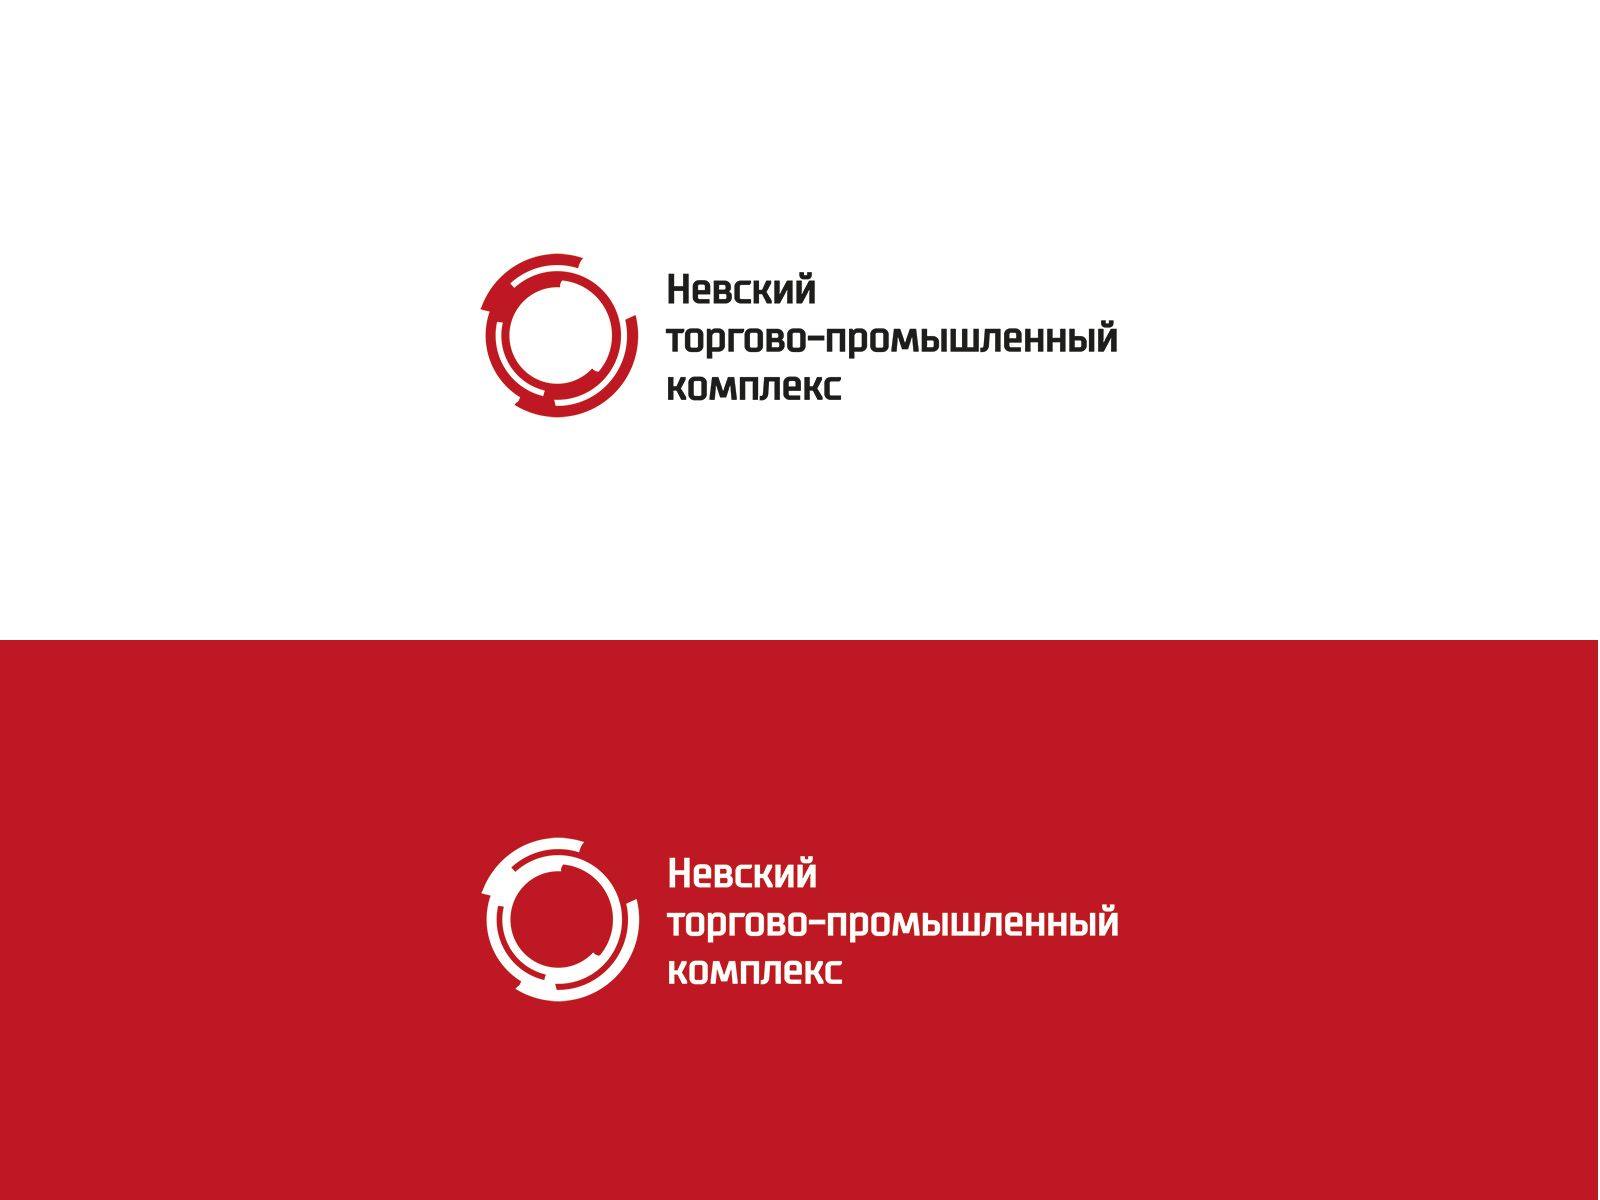 Создание логотипа для железнодорожной компании - дизайнер 10011994z